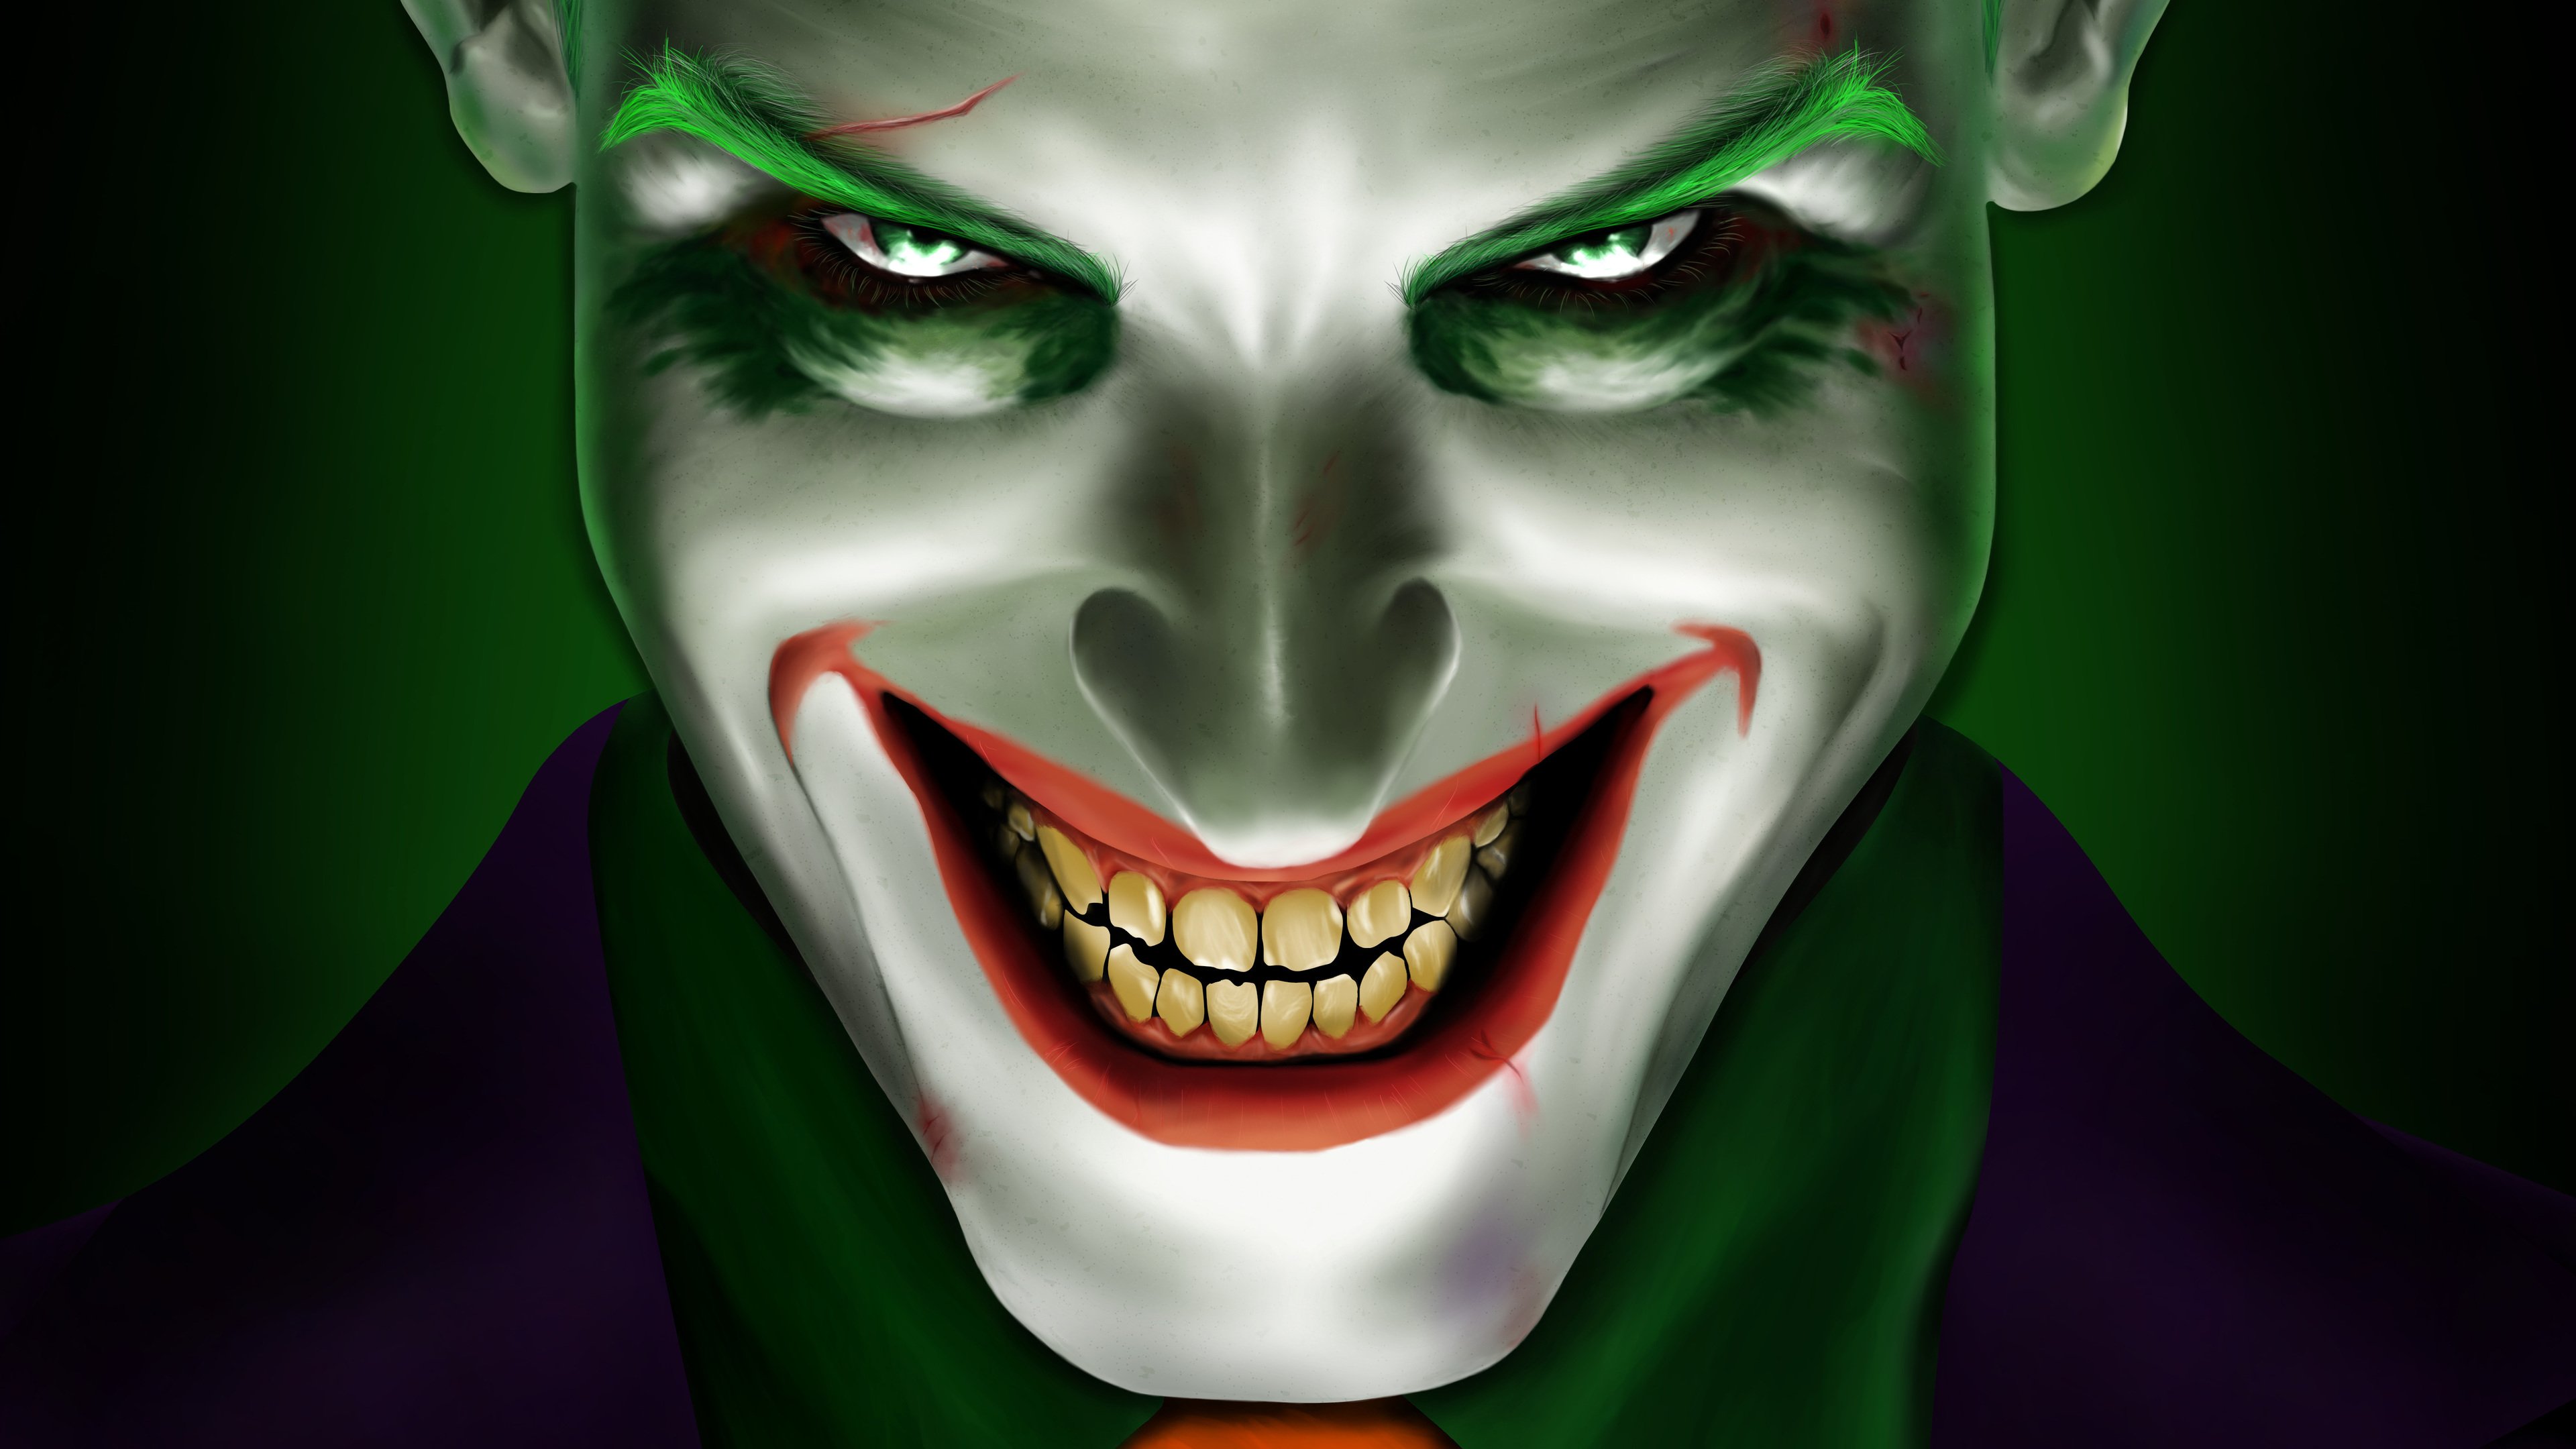 Wallpapers 4k Joker Smiling 5k 4k